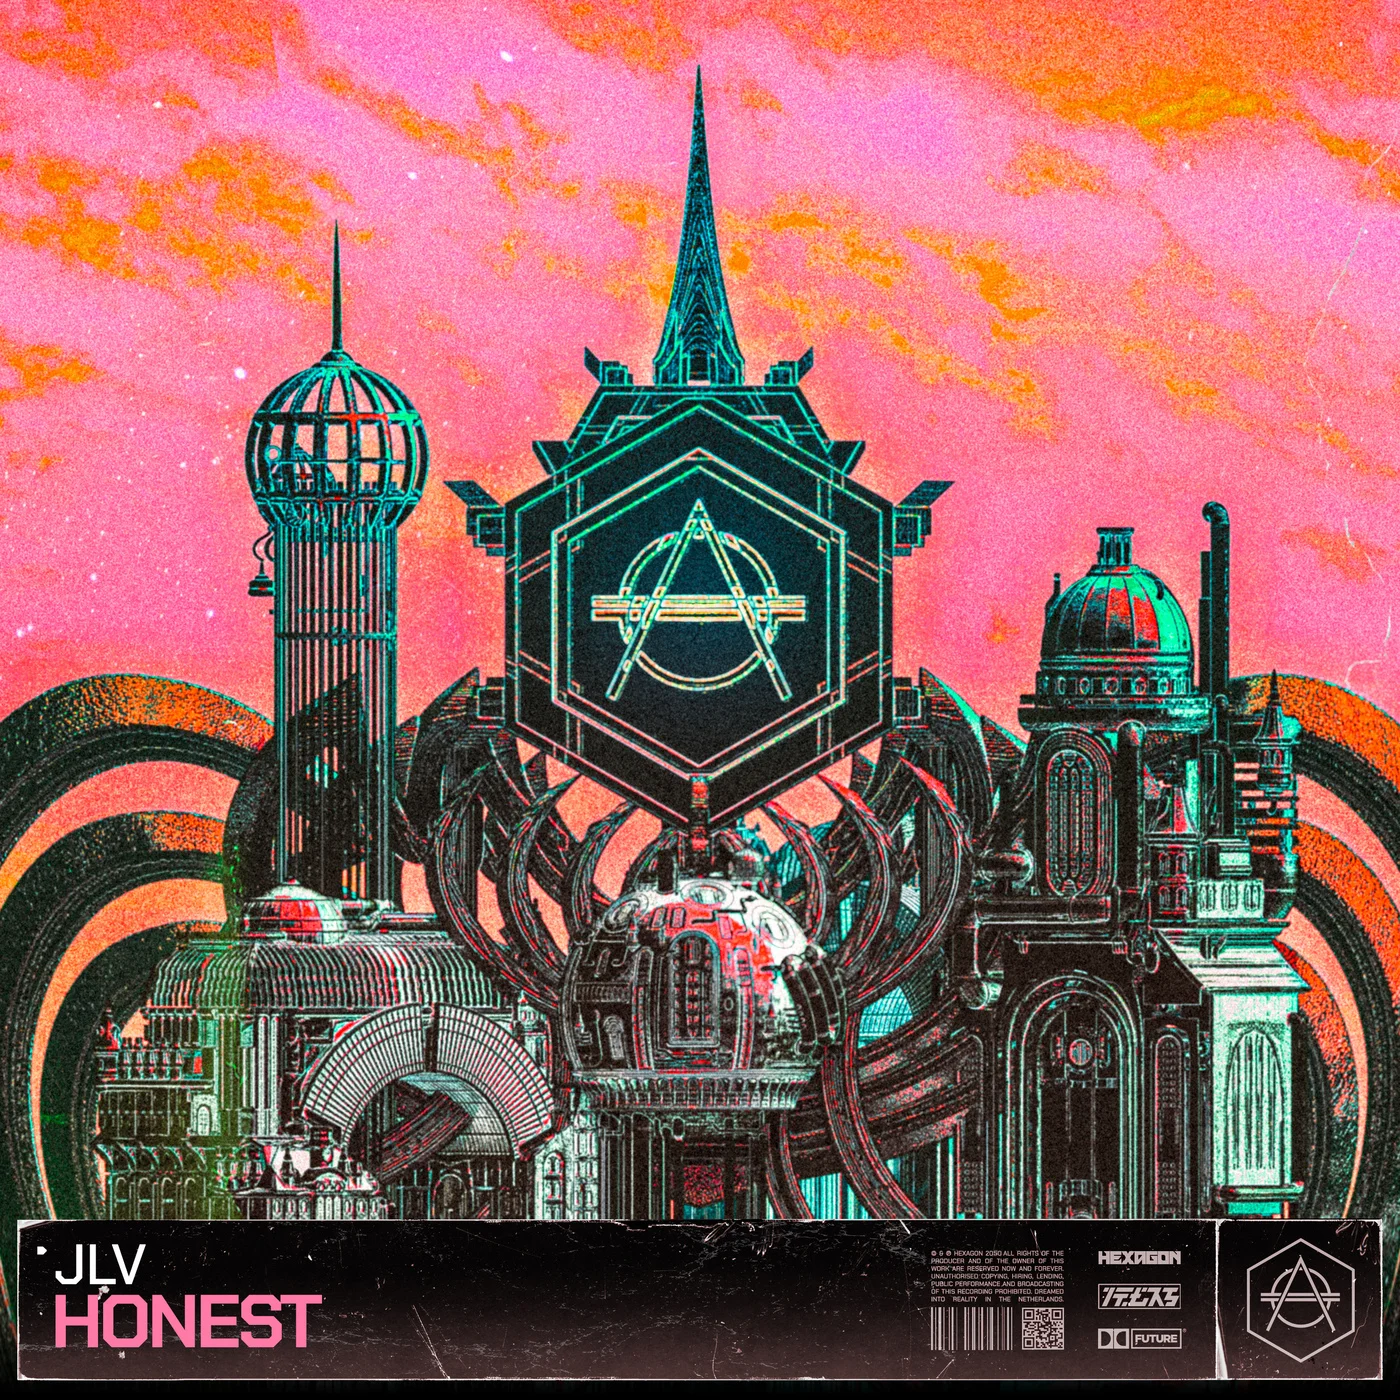 JLV Honest cover artwork